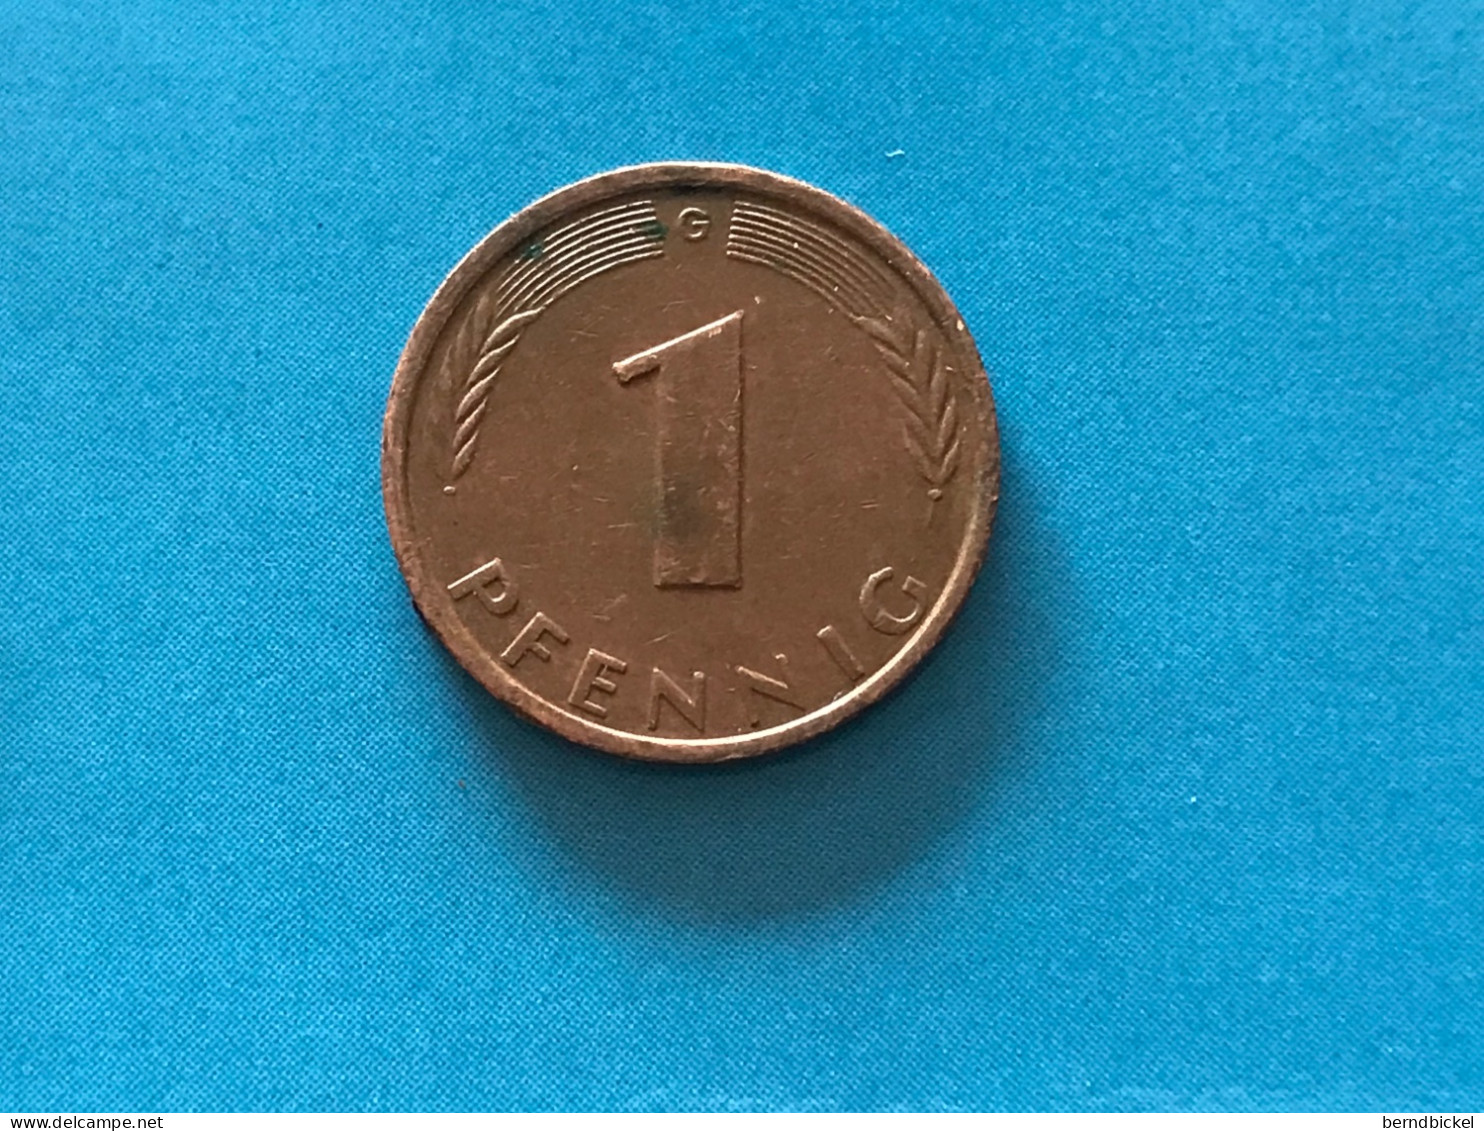 Münze Münzen Umlaufmünze Deutschland 1 Pfennig 1980 Münzzeichen G - 1 Pfennig